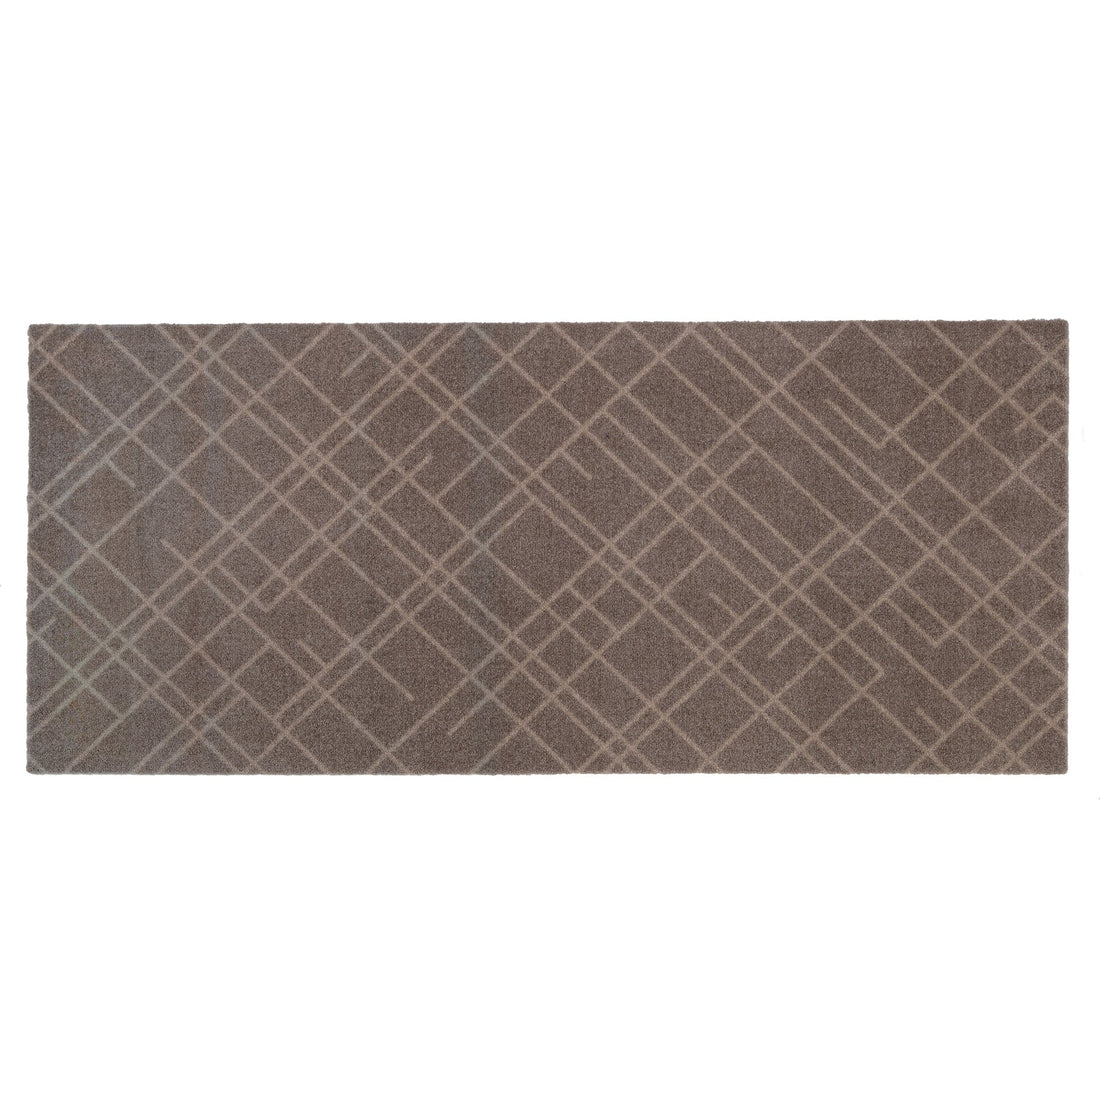 Floor mat 67 x 150 cm - lines/sand